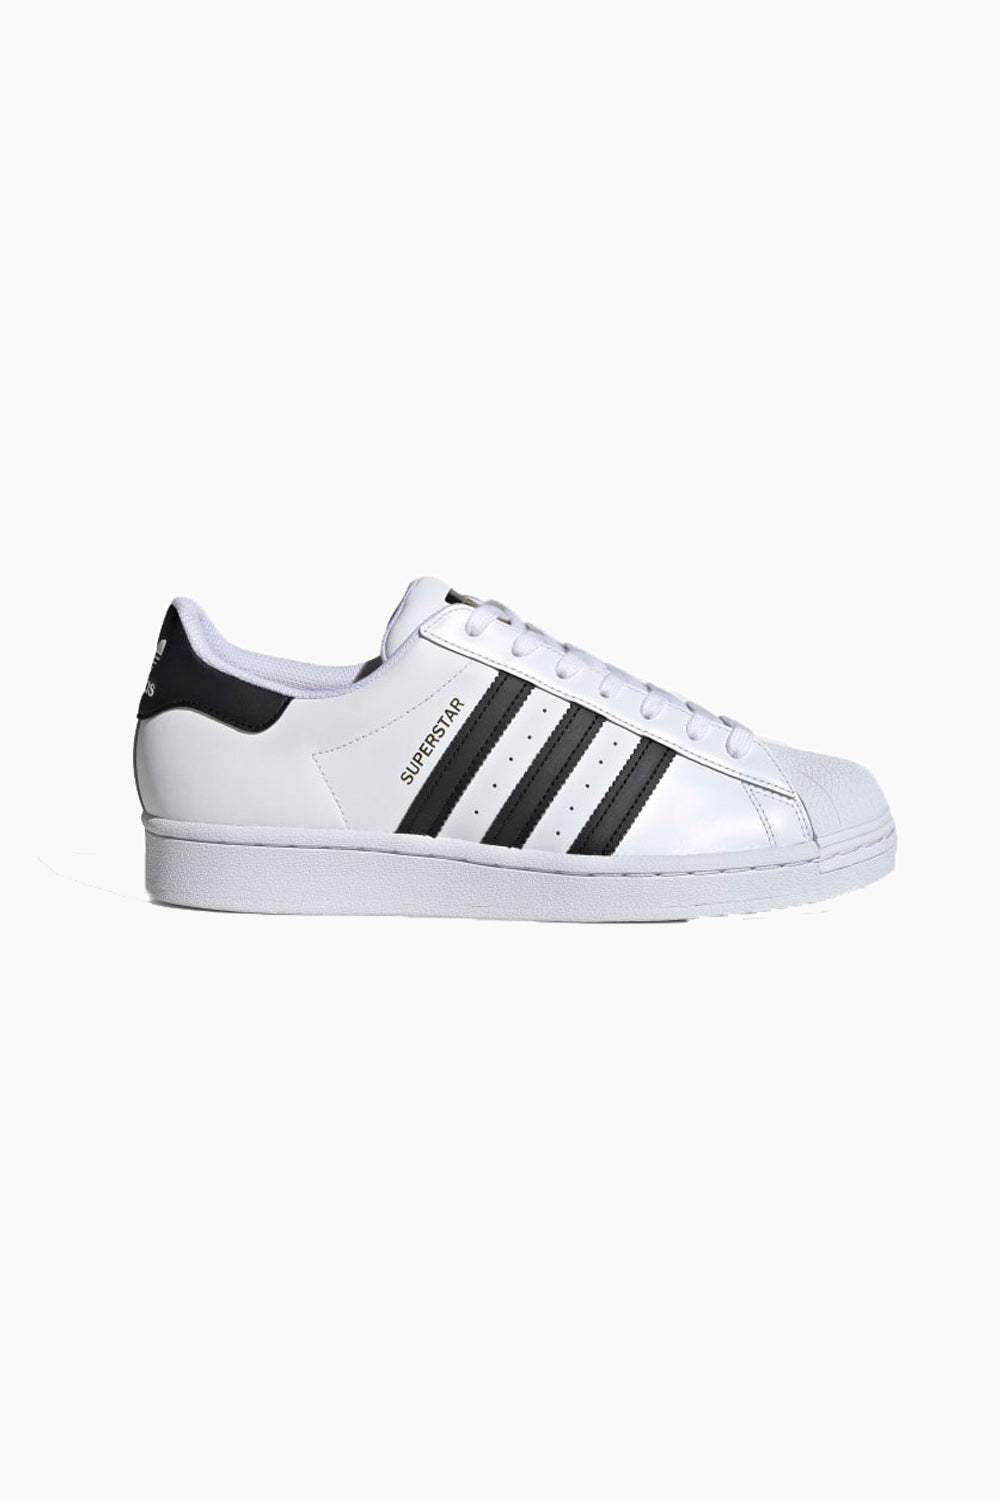 kandidatskole Danmark tre Adidas Superstar - White/Black - Adidas Originals - Hvid 38 2/3 sneakers  fra Adidas til dame i Hvid - Pashion.dk